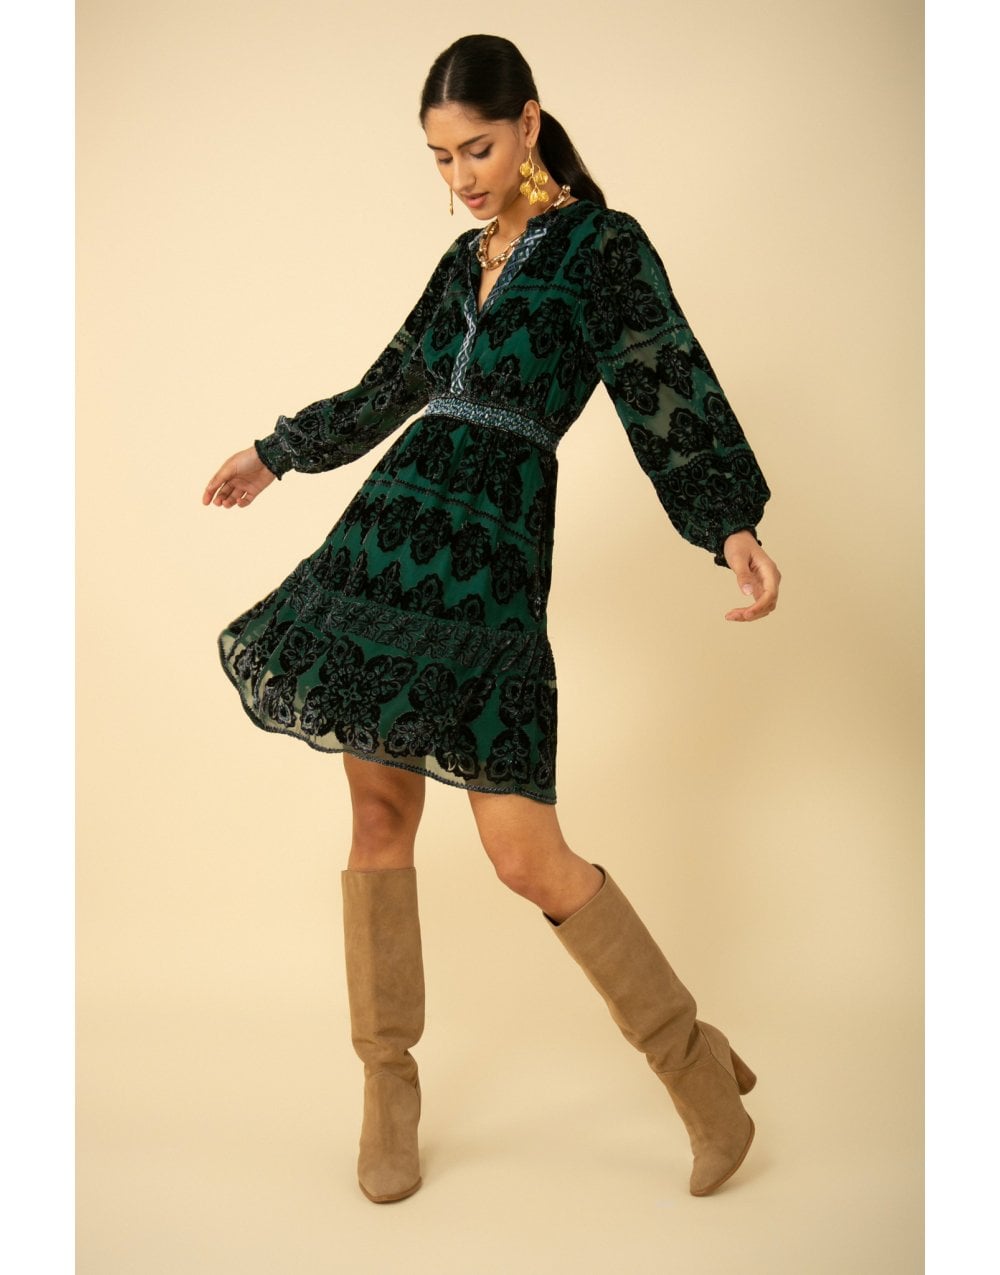 HALEBOB Halebob Emerald Devore Short Dress Size: L, Col: Green